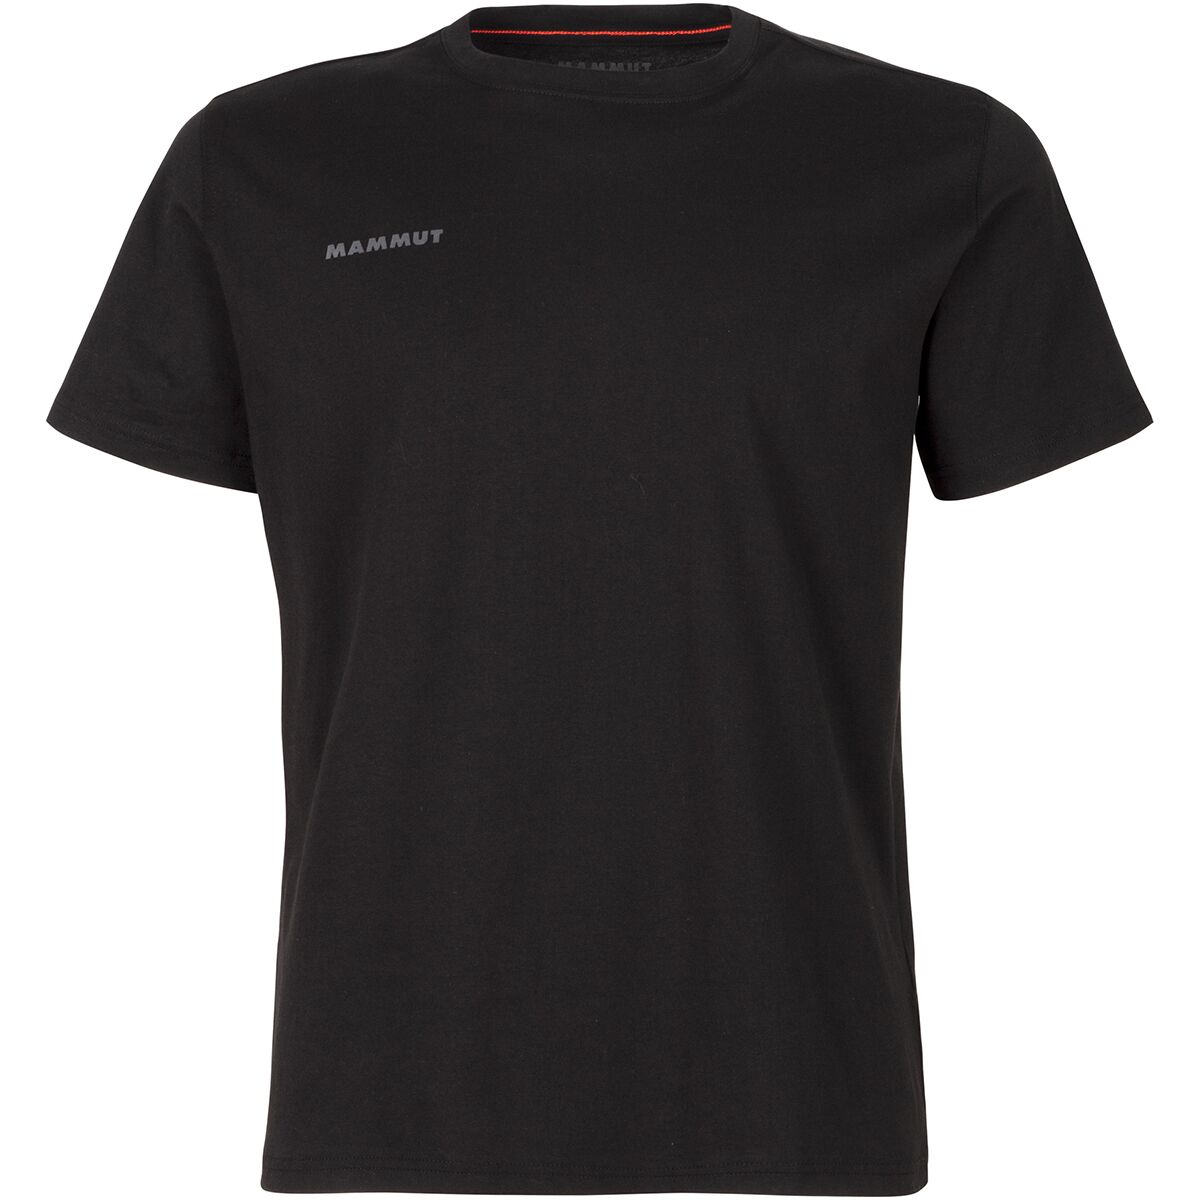 Mammut Seile Short-Sleeve T-Shirt - Men's | Backcountry.com